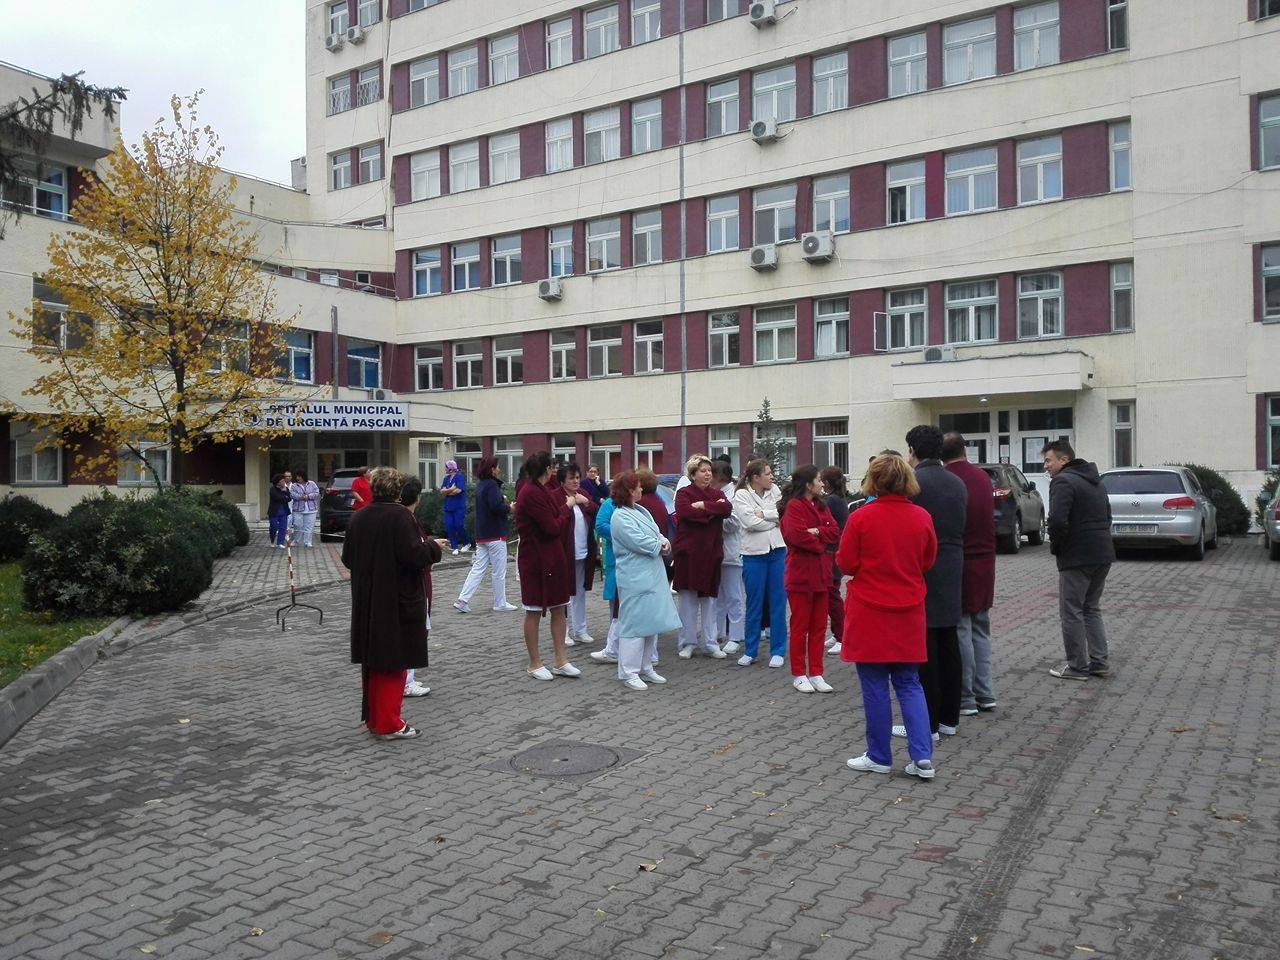  Specialităţi noi în cadrul Spitalului Municipal Paşcani